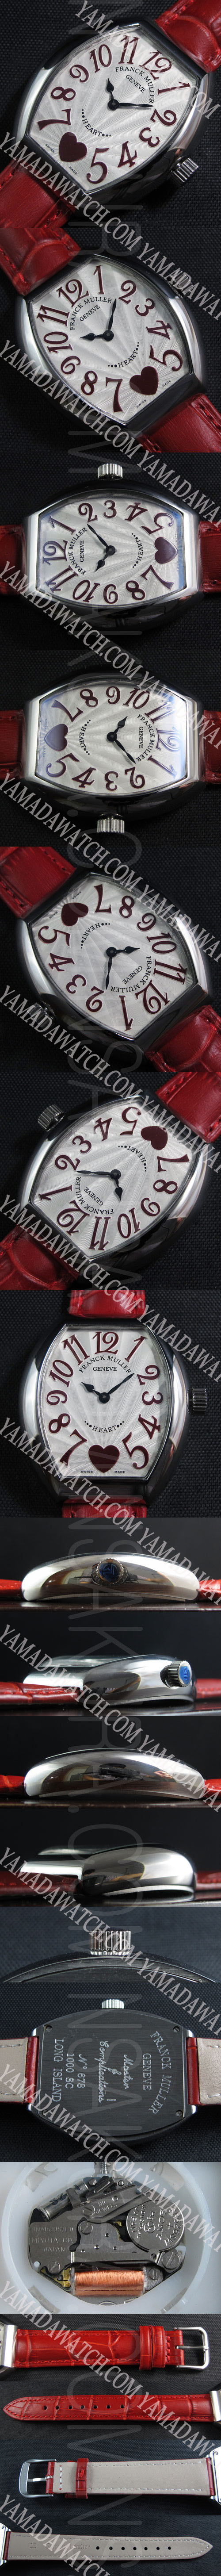 時計老舗フランクミュラー カサブランカ (電池式レディース赤革ベルト)